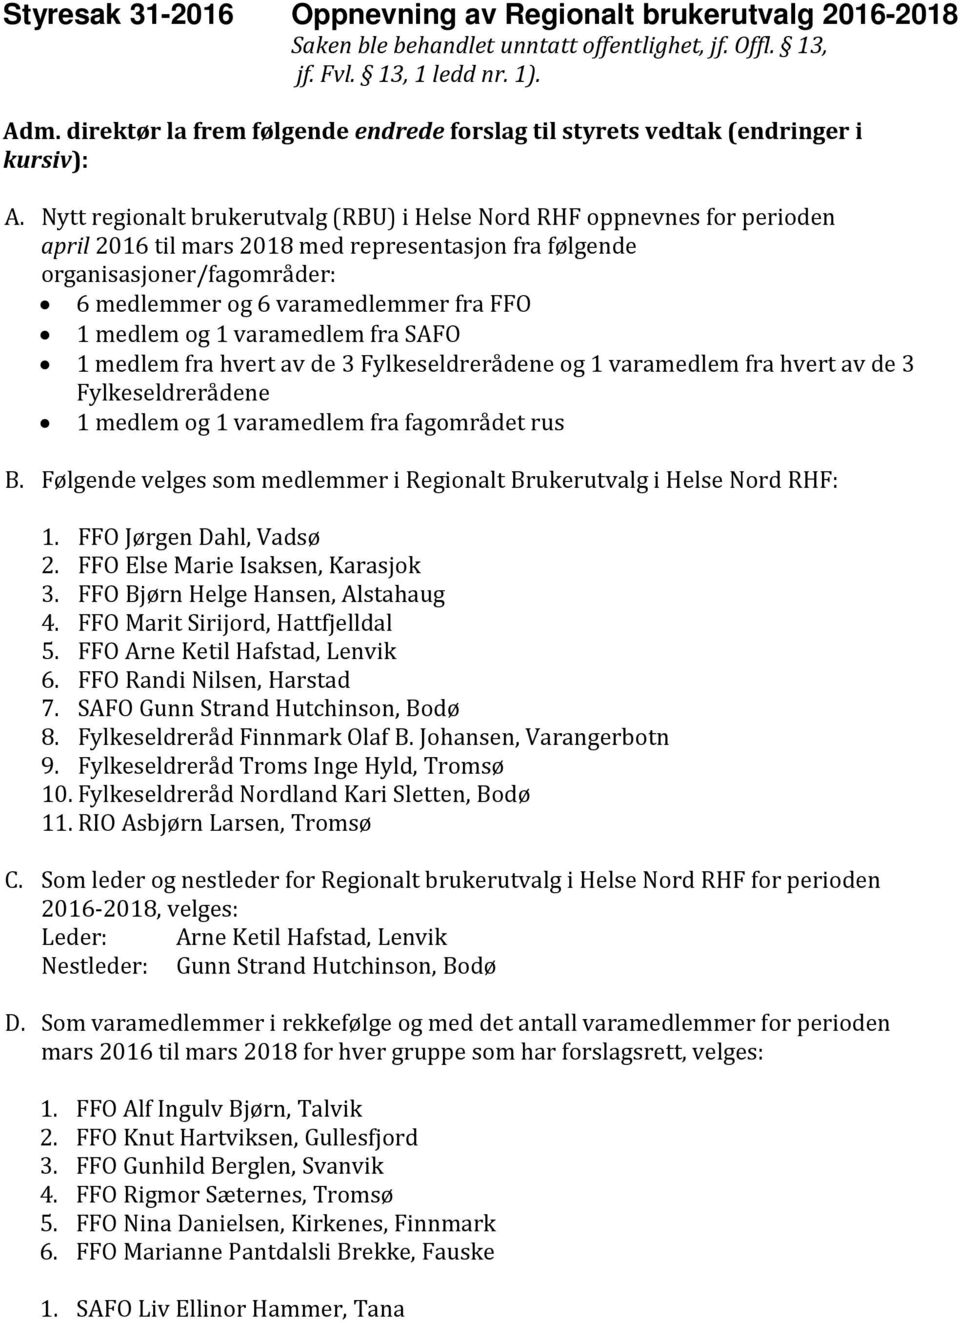 Nytt regionalt brukerutvalg (RBU) i Helse Nord RHF oppnevnes for perioden april 2016 til mars 2018 med representasjon fra følgende organisasjoner/fagområder: 6 medlemmer og 6 varamedlemmer fra FFO 1